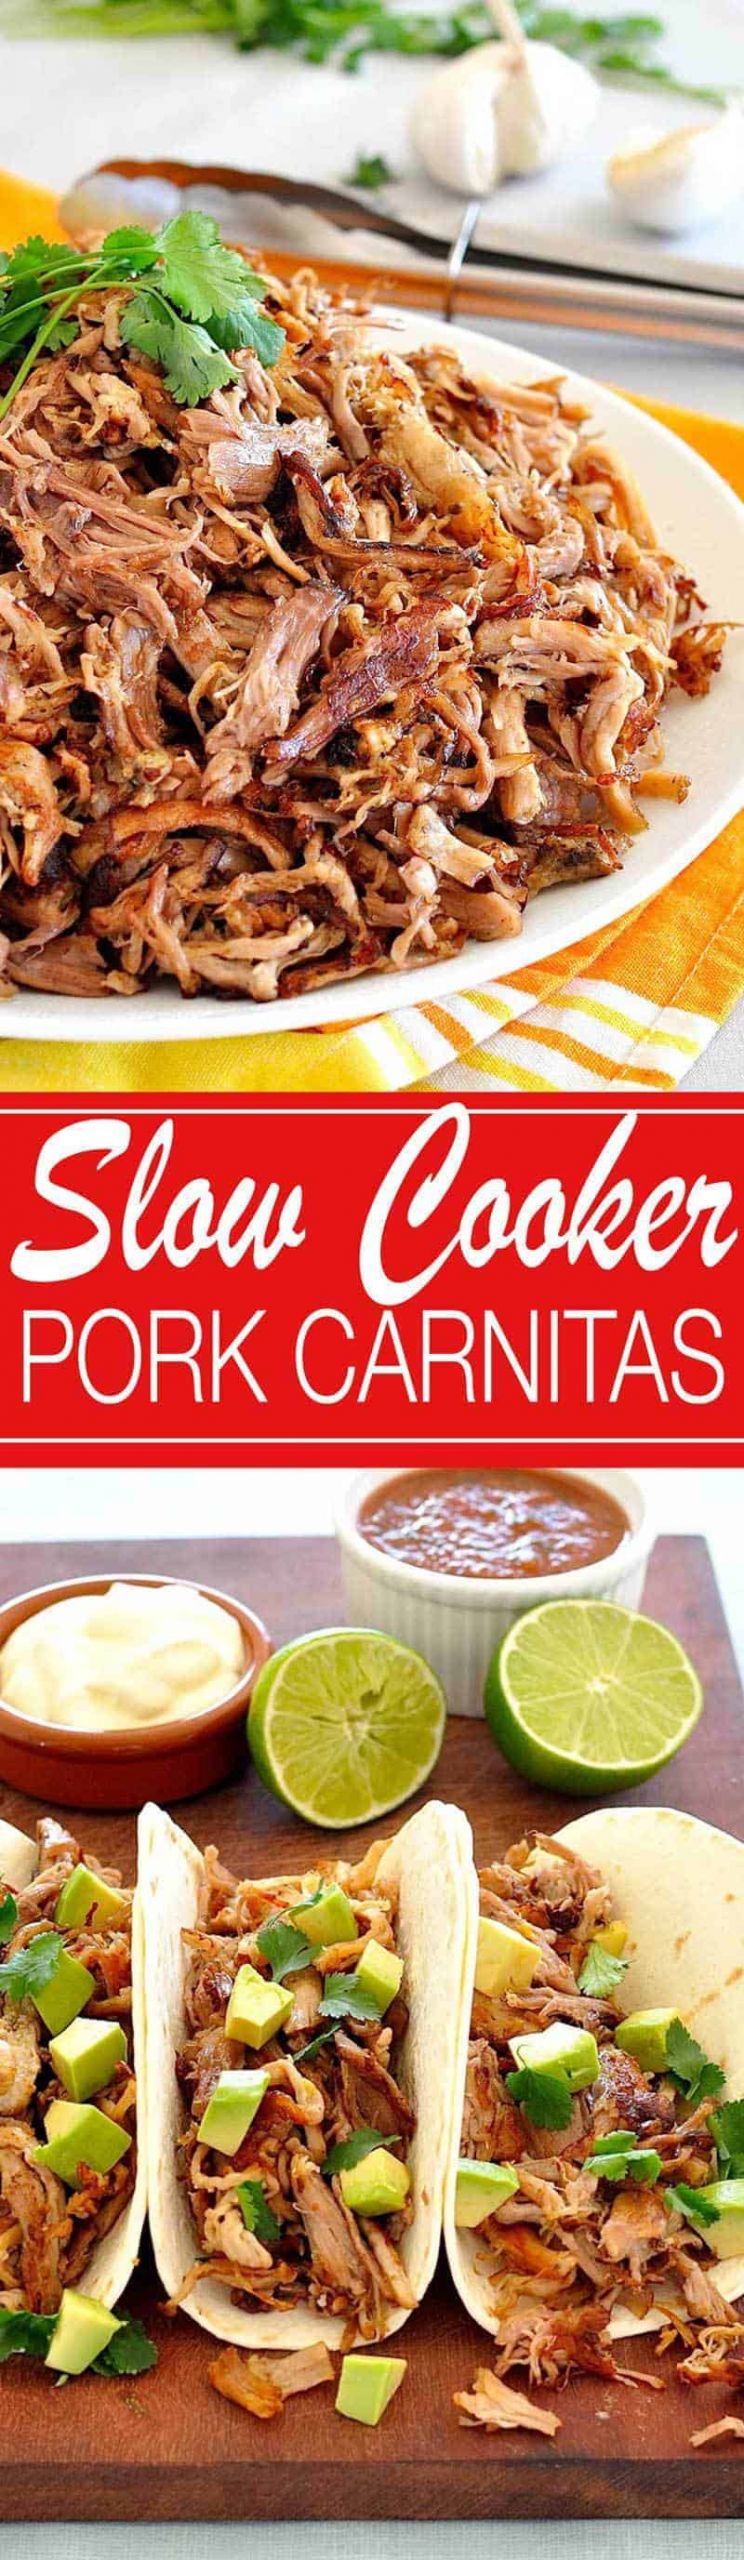 Mexican Pork Carnitas Recipes
 Pork Carnitas Mexican Slow Cooker Pulled Pork